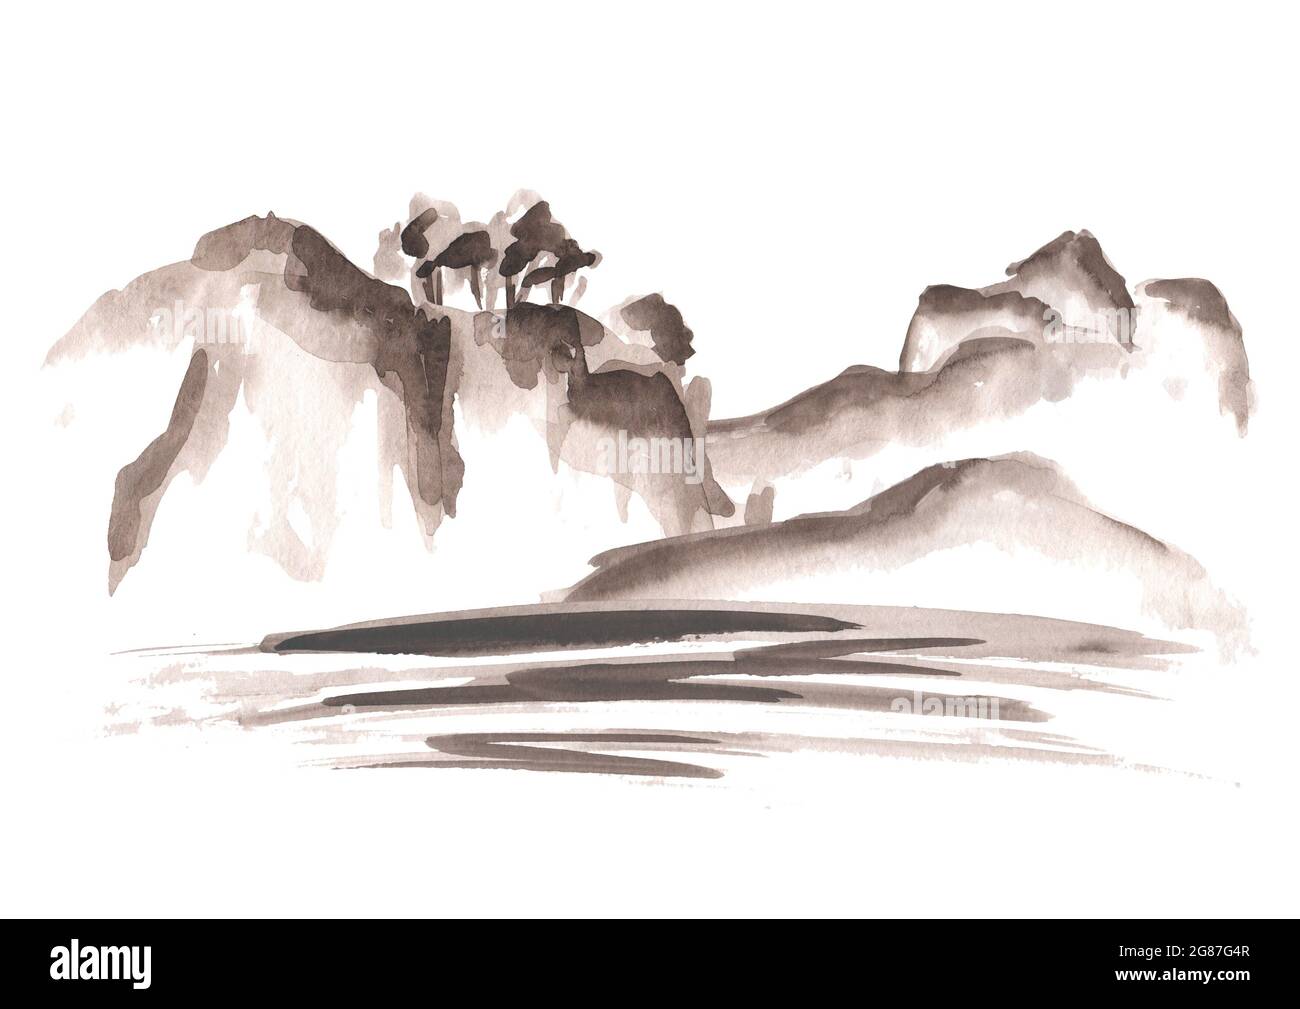 Montagnes et rivière ou mer, cuisine asiatique chinoise et japonaise de style oriental. Illustration aquarelle dessinée à la main, isolée sur fond blanc Banque D'Images